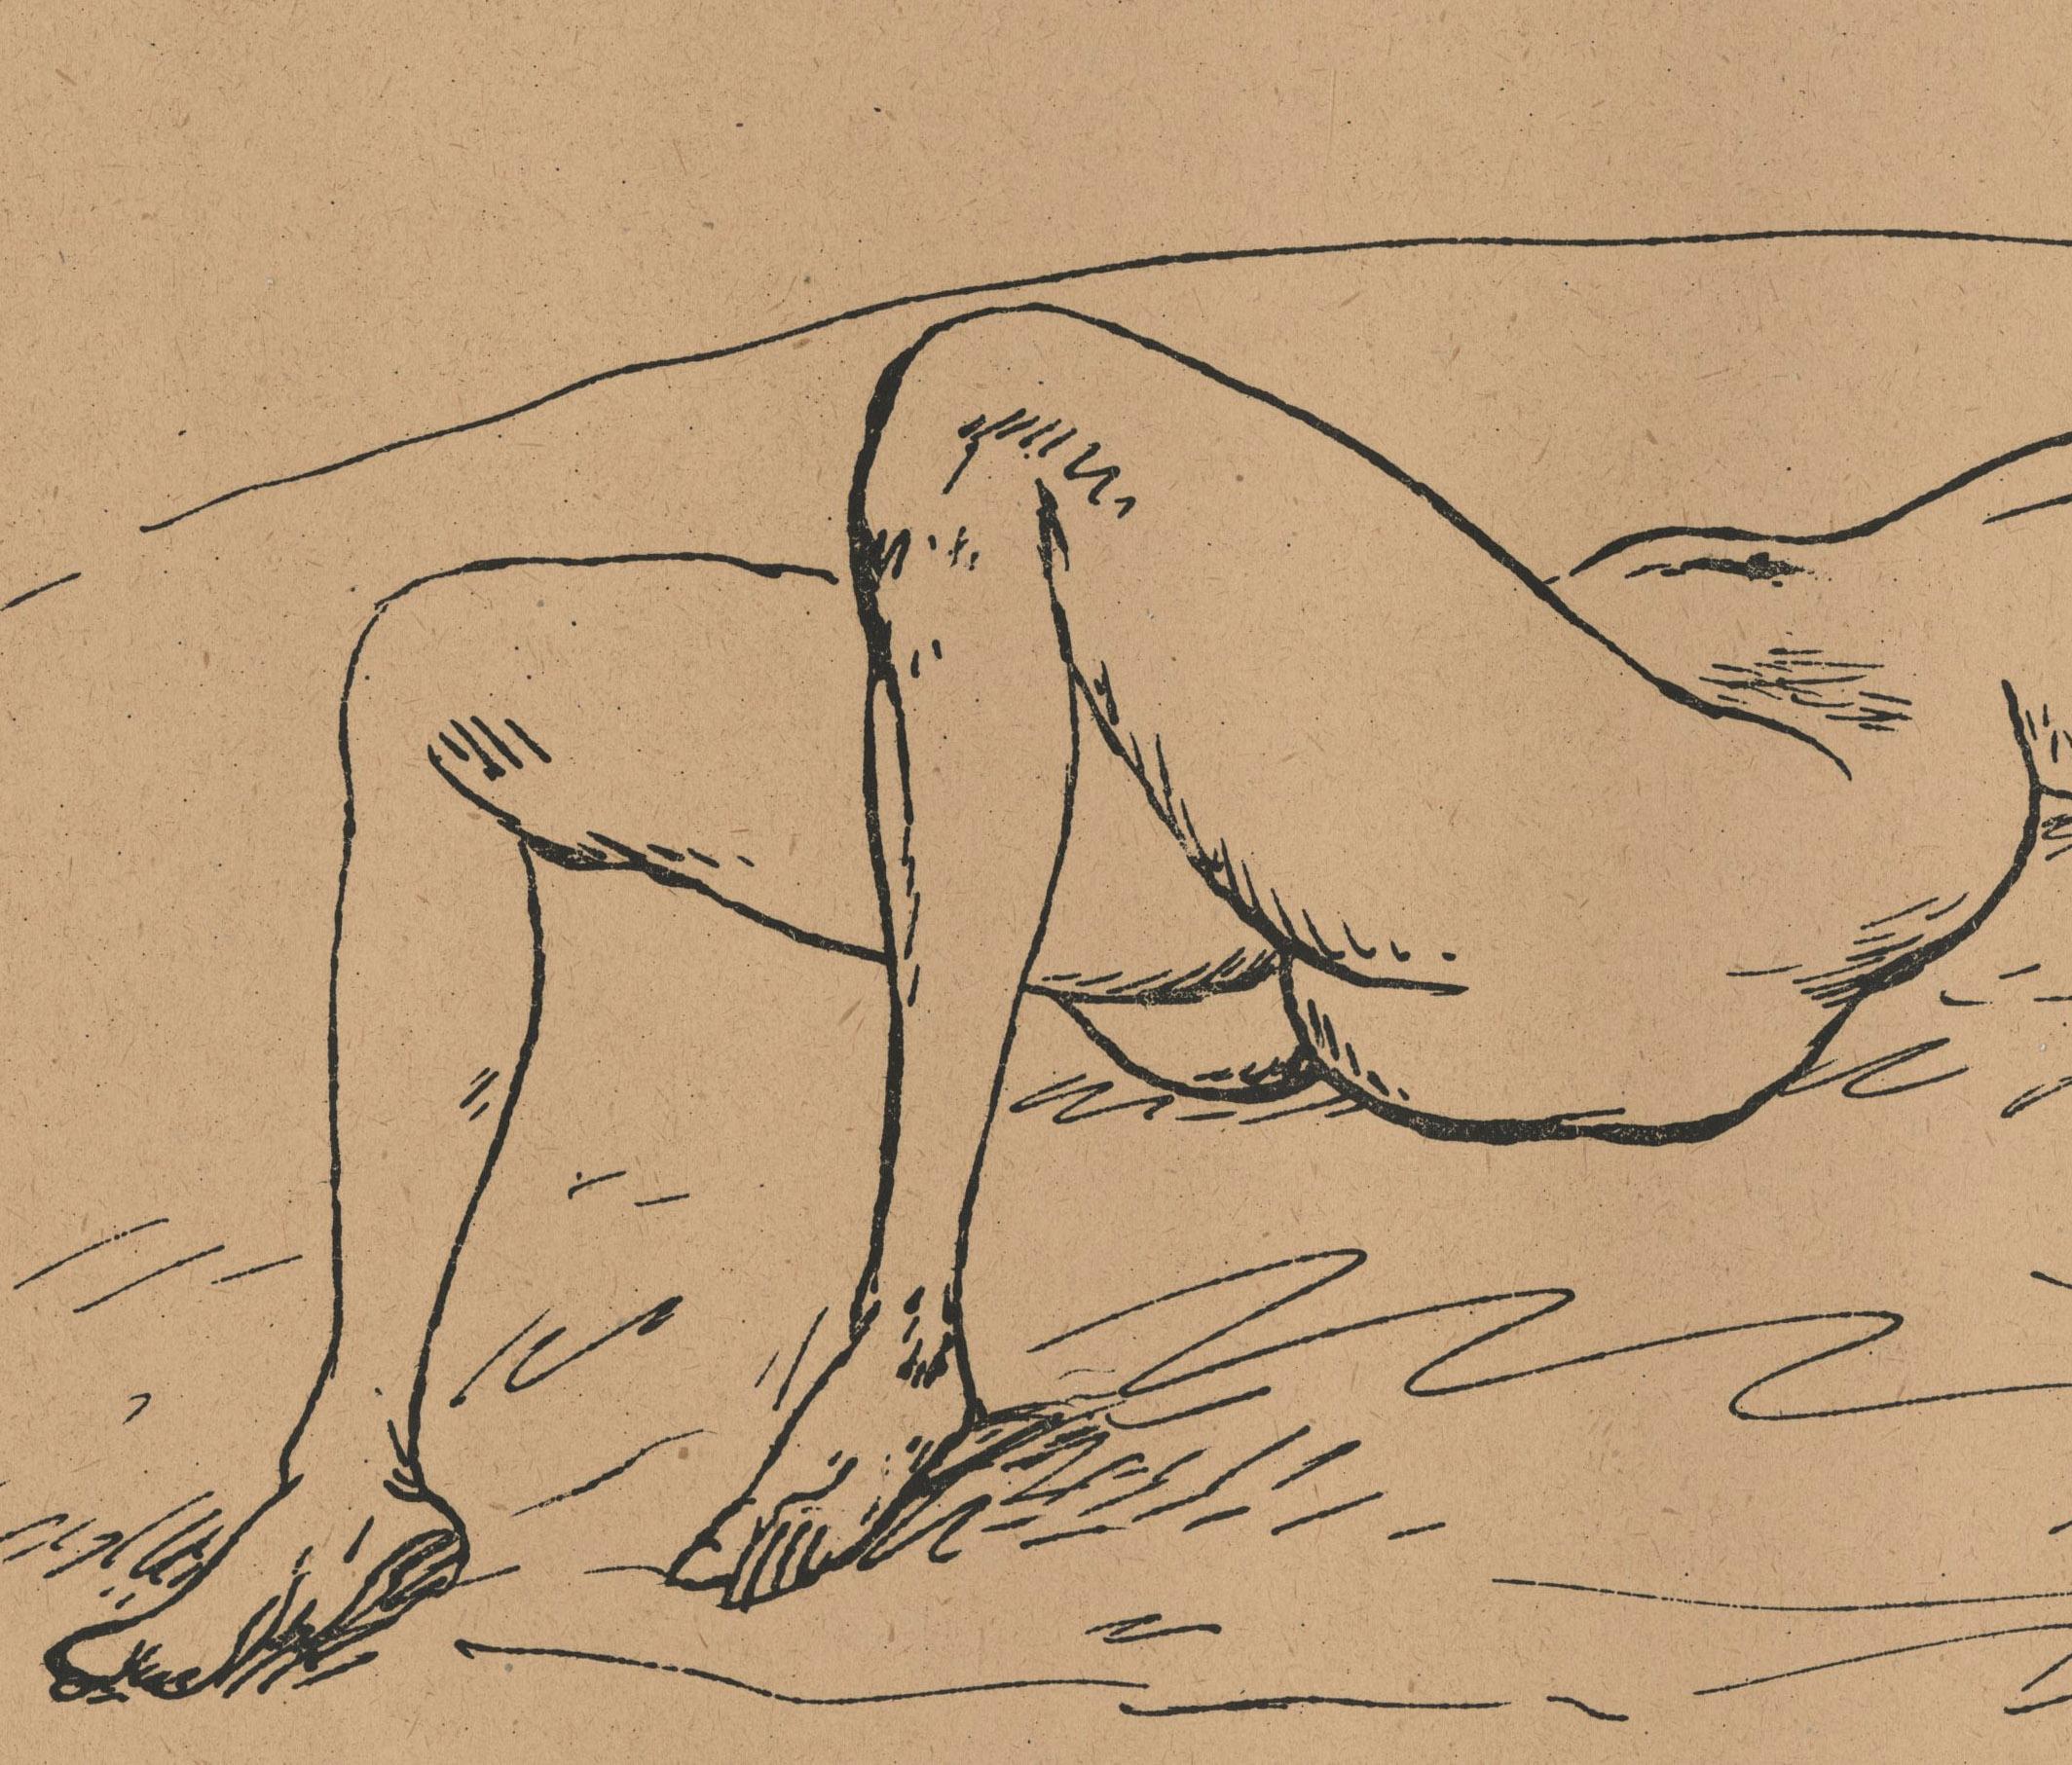 Reclining Nude on Bed - Jugendstil Print by Rudolf Bauer